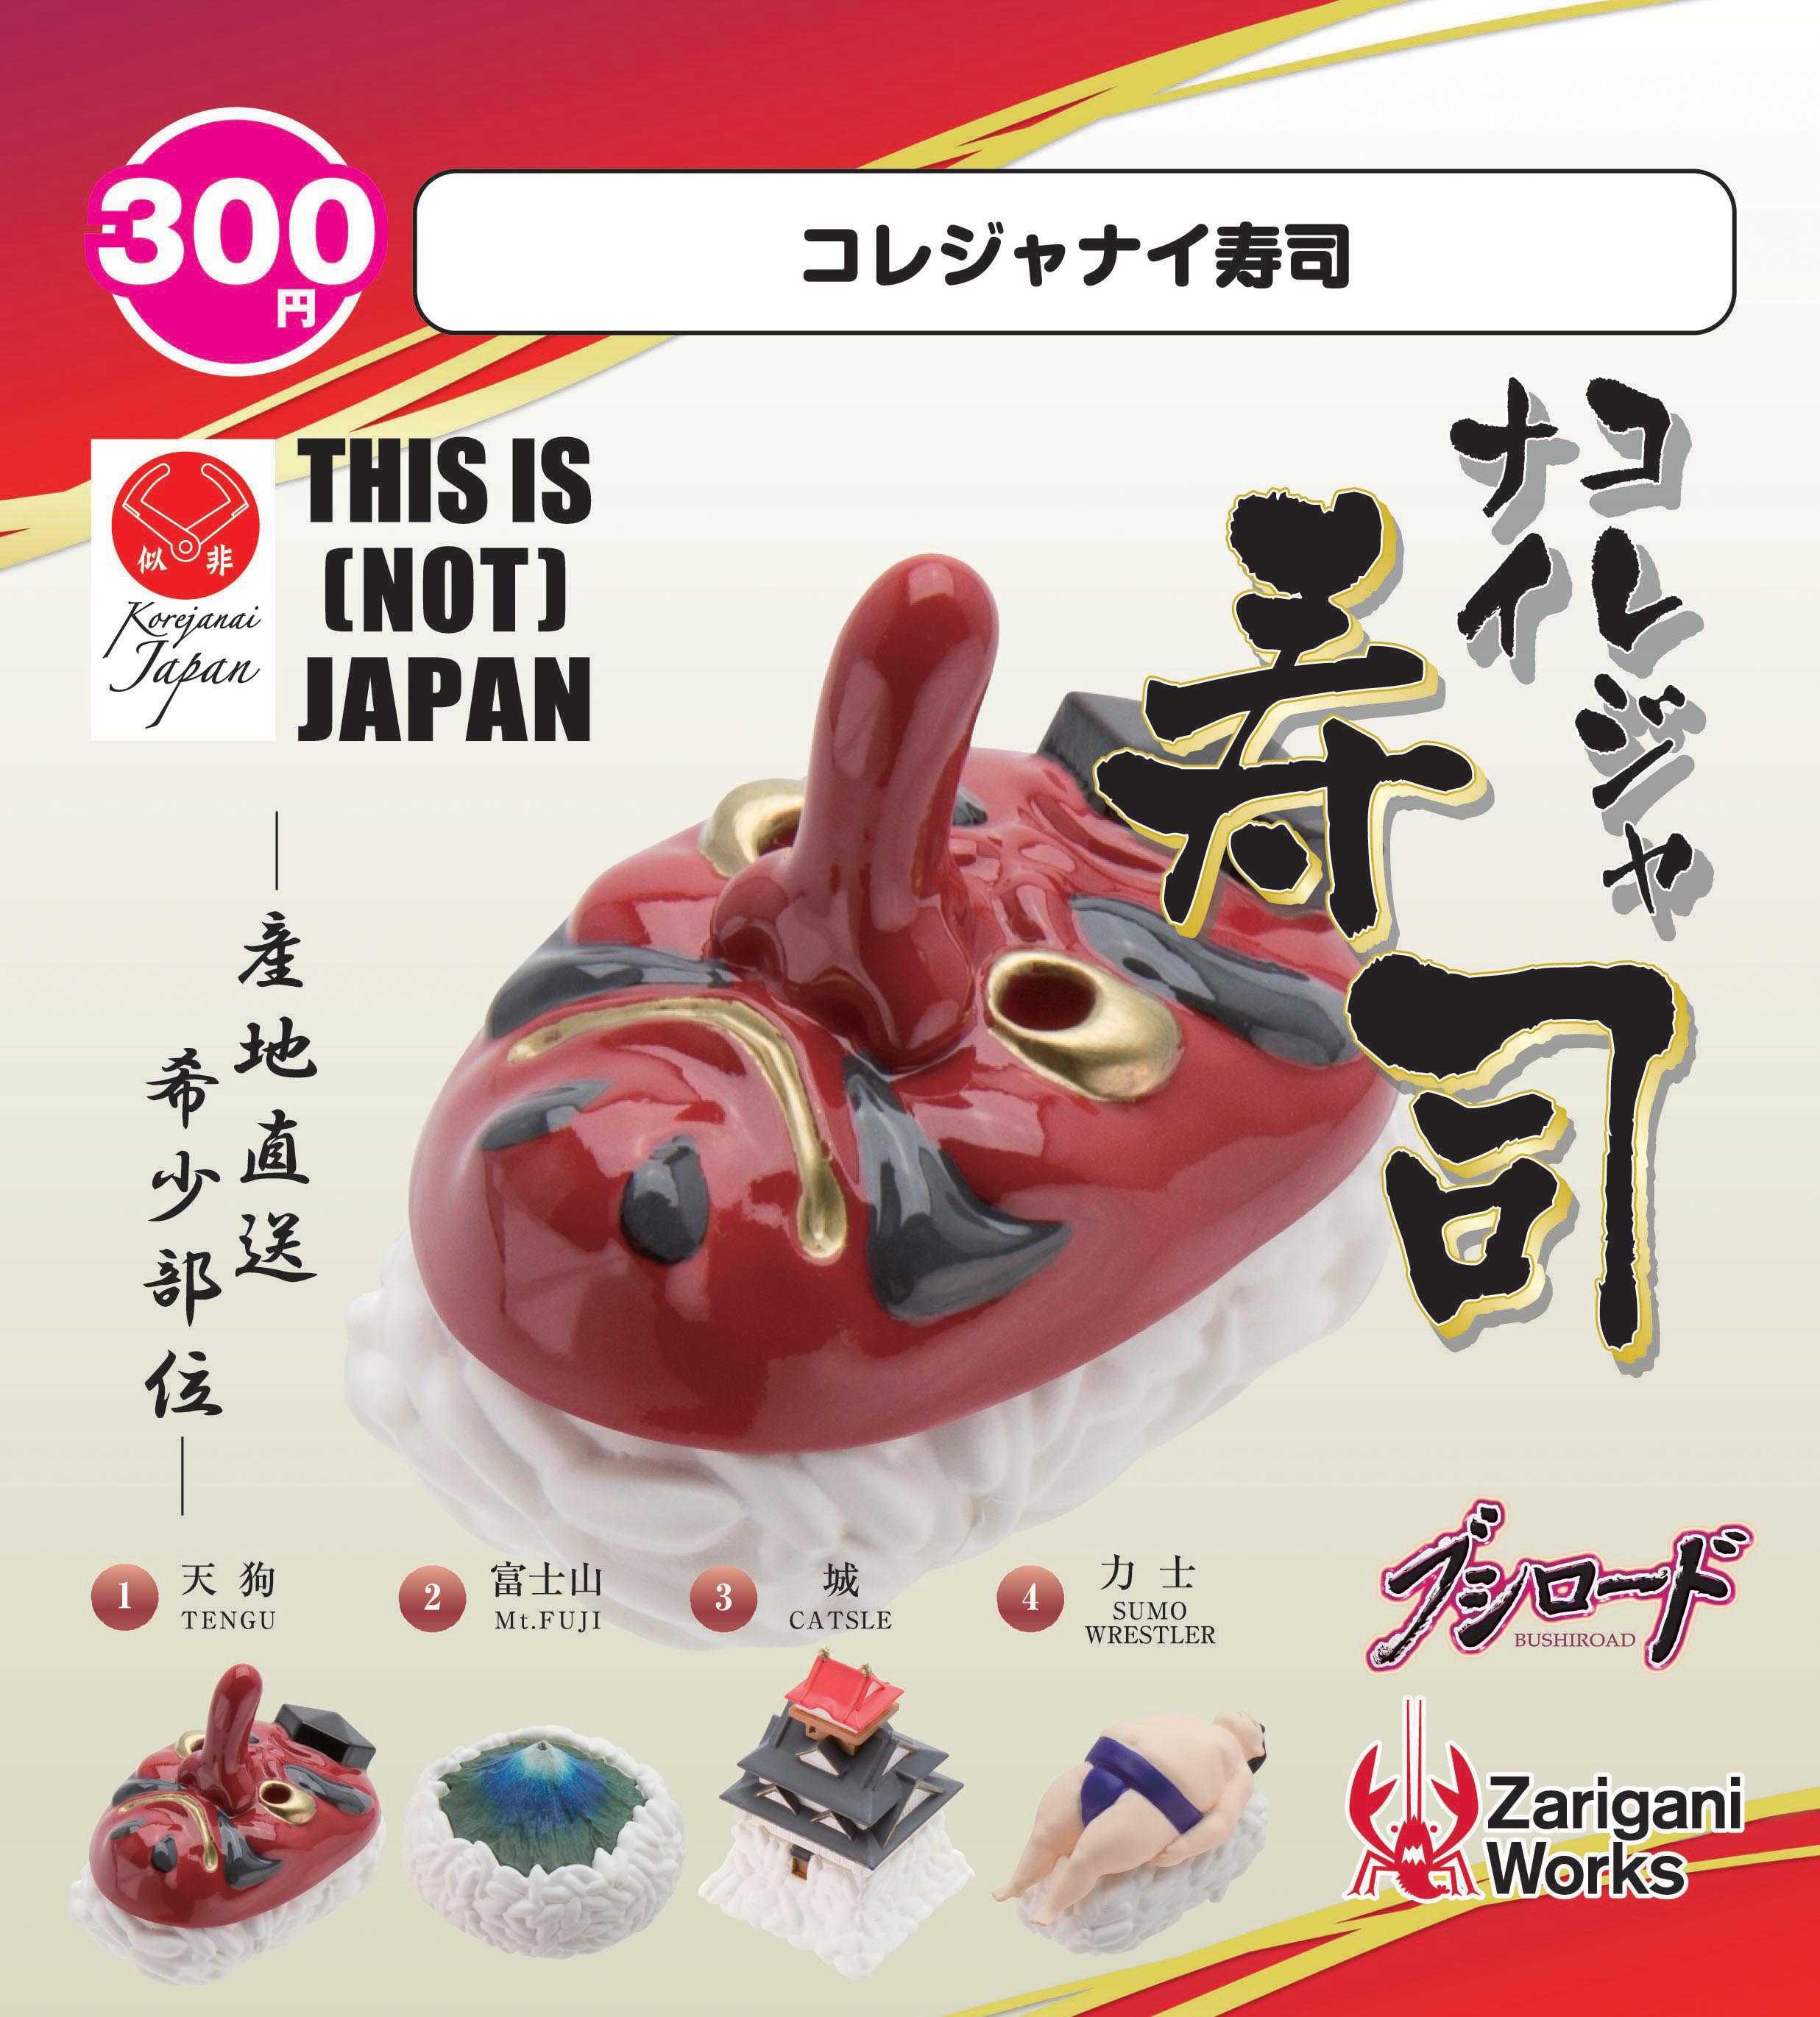 300日元扭蛋 这&quot;不是&quot;日本 寿司造型代表物 全4种  710531